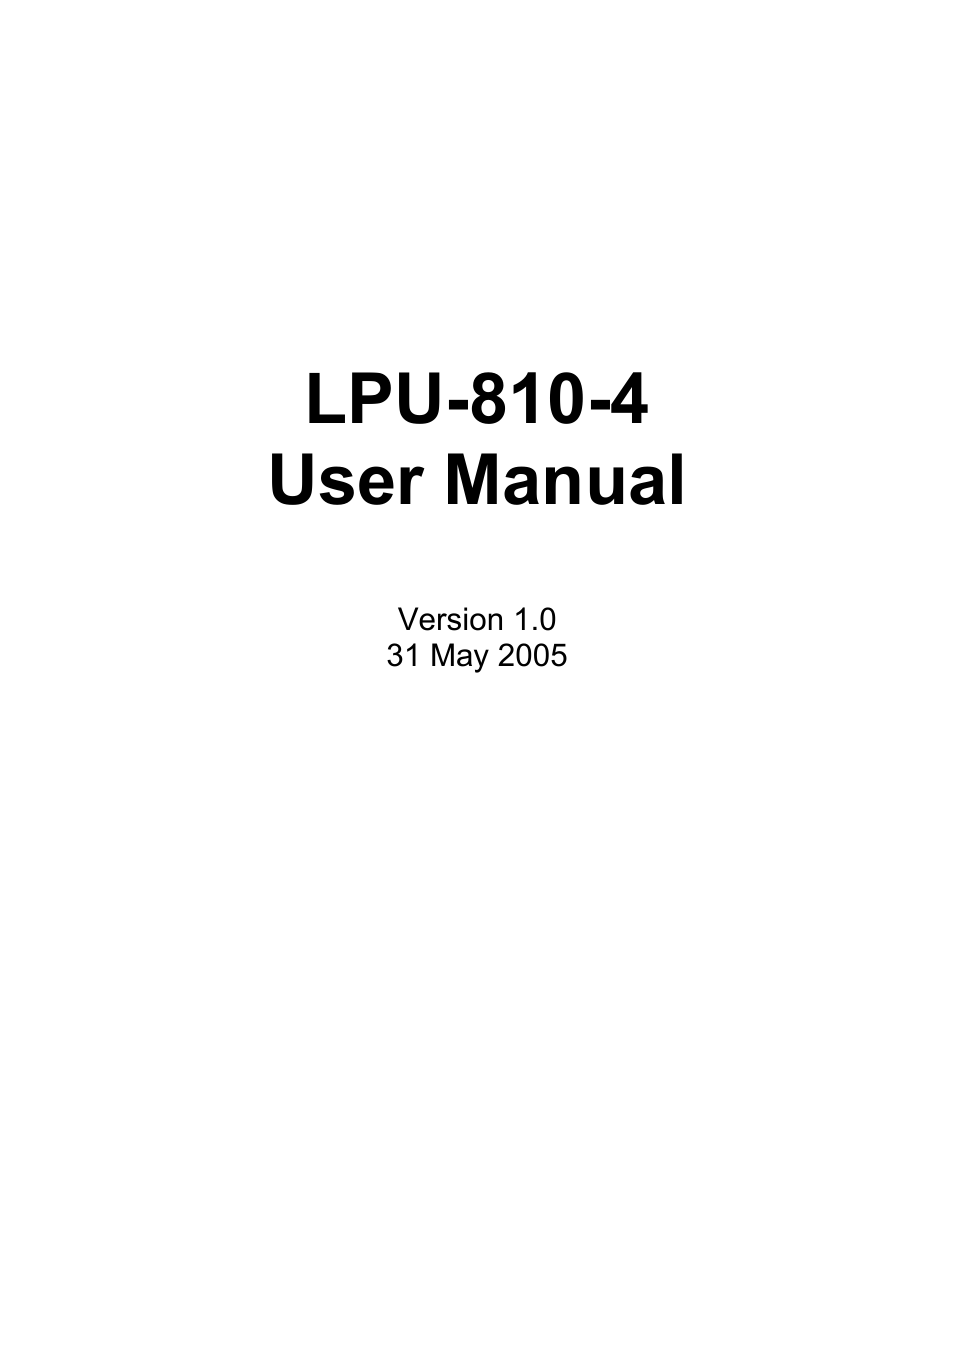           LPU-810-4 User Manual  Version 1.0 31 May 2005                        